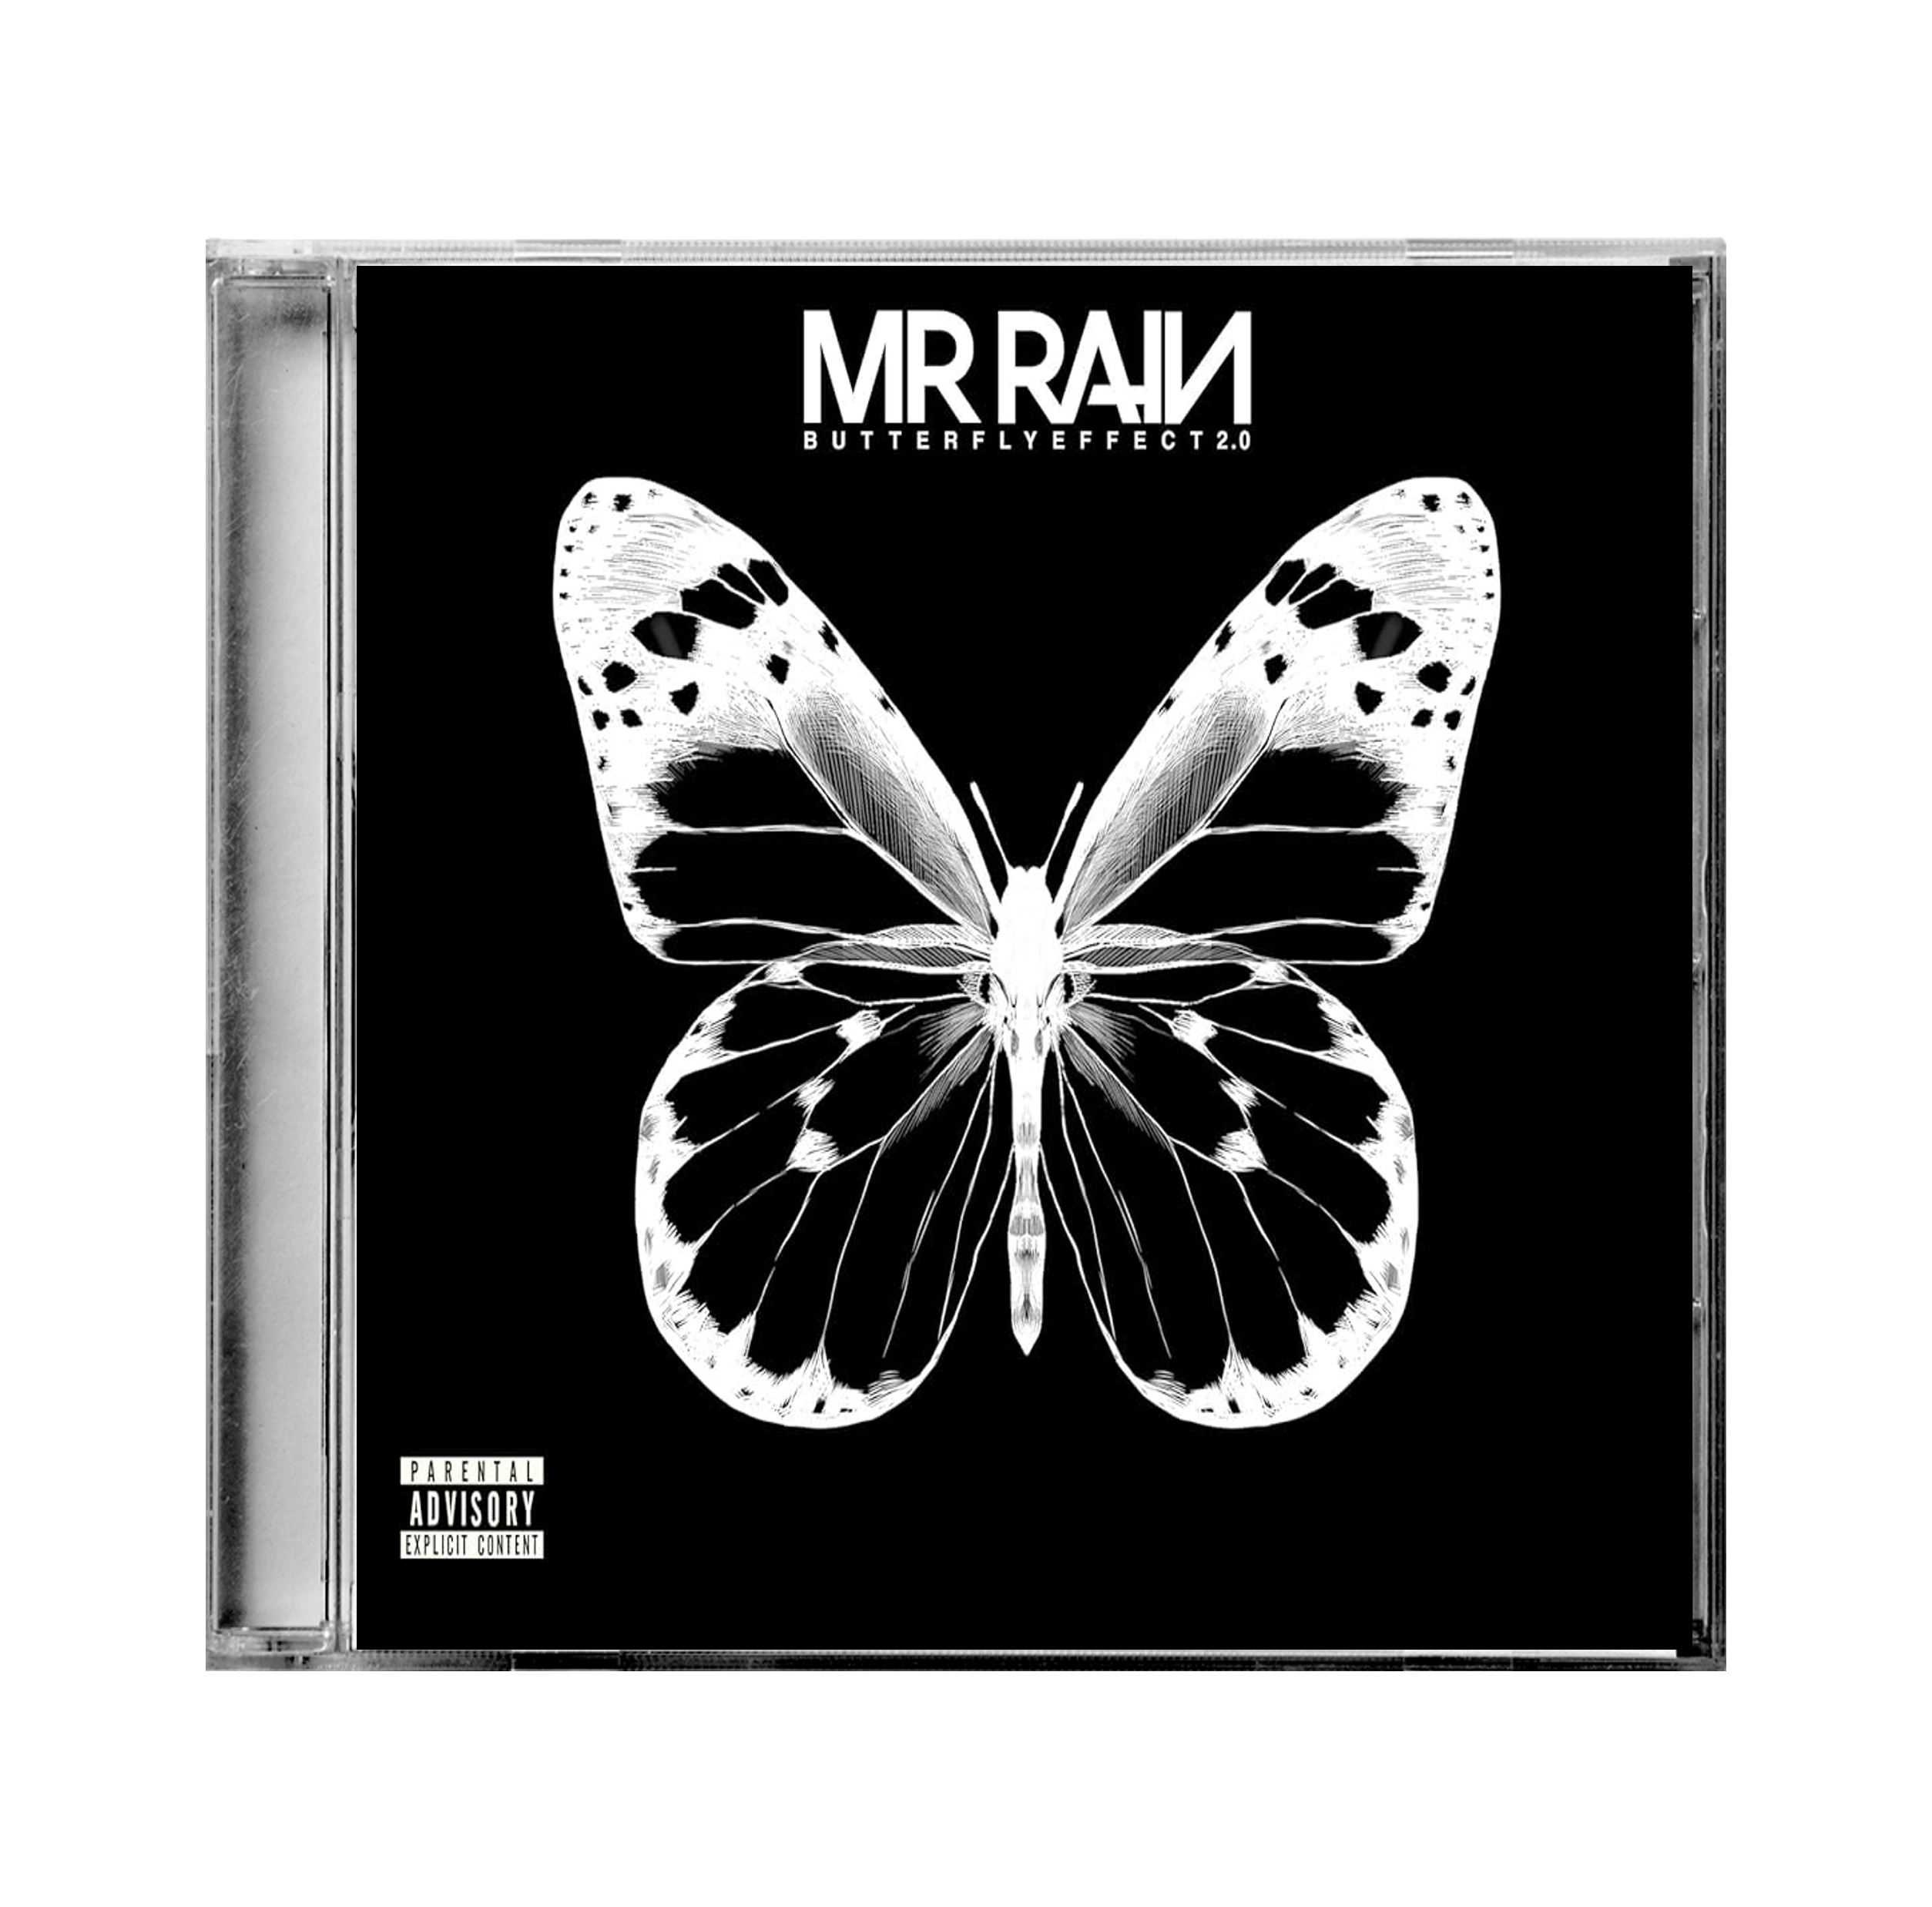 Butterfly Effect 2.0 (CD)